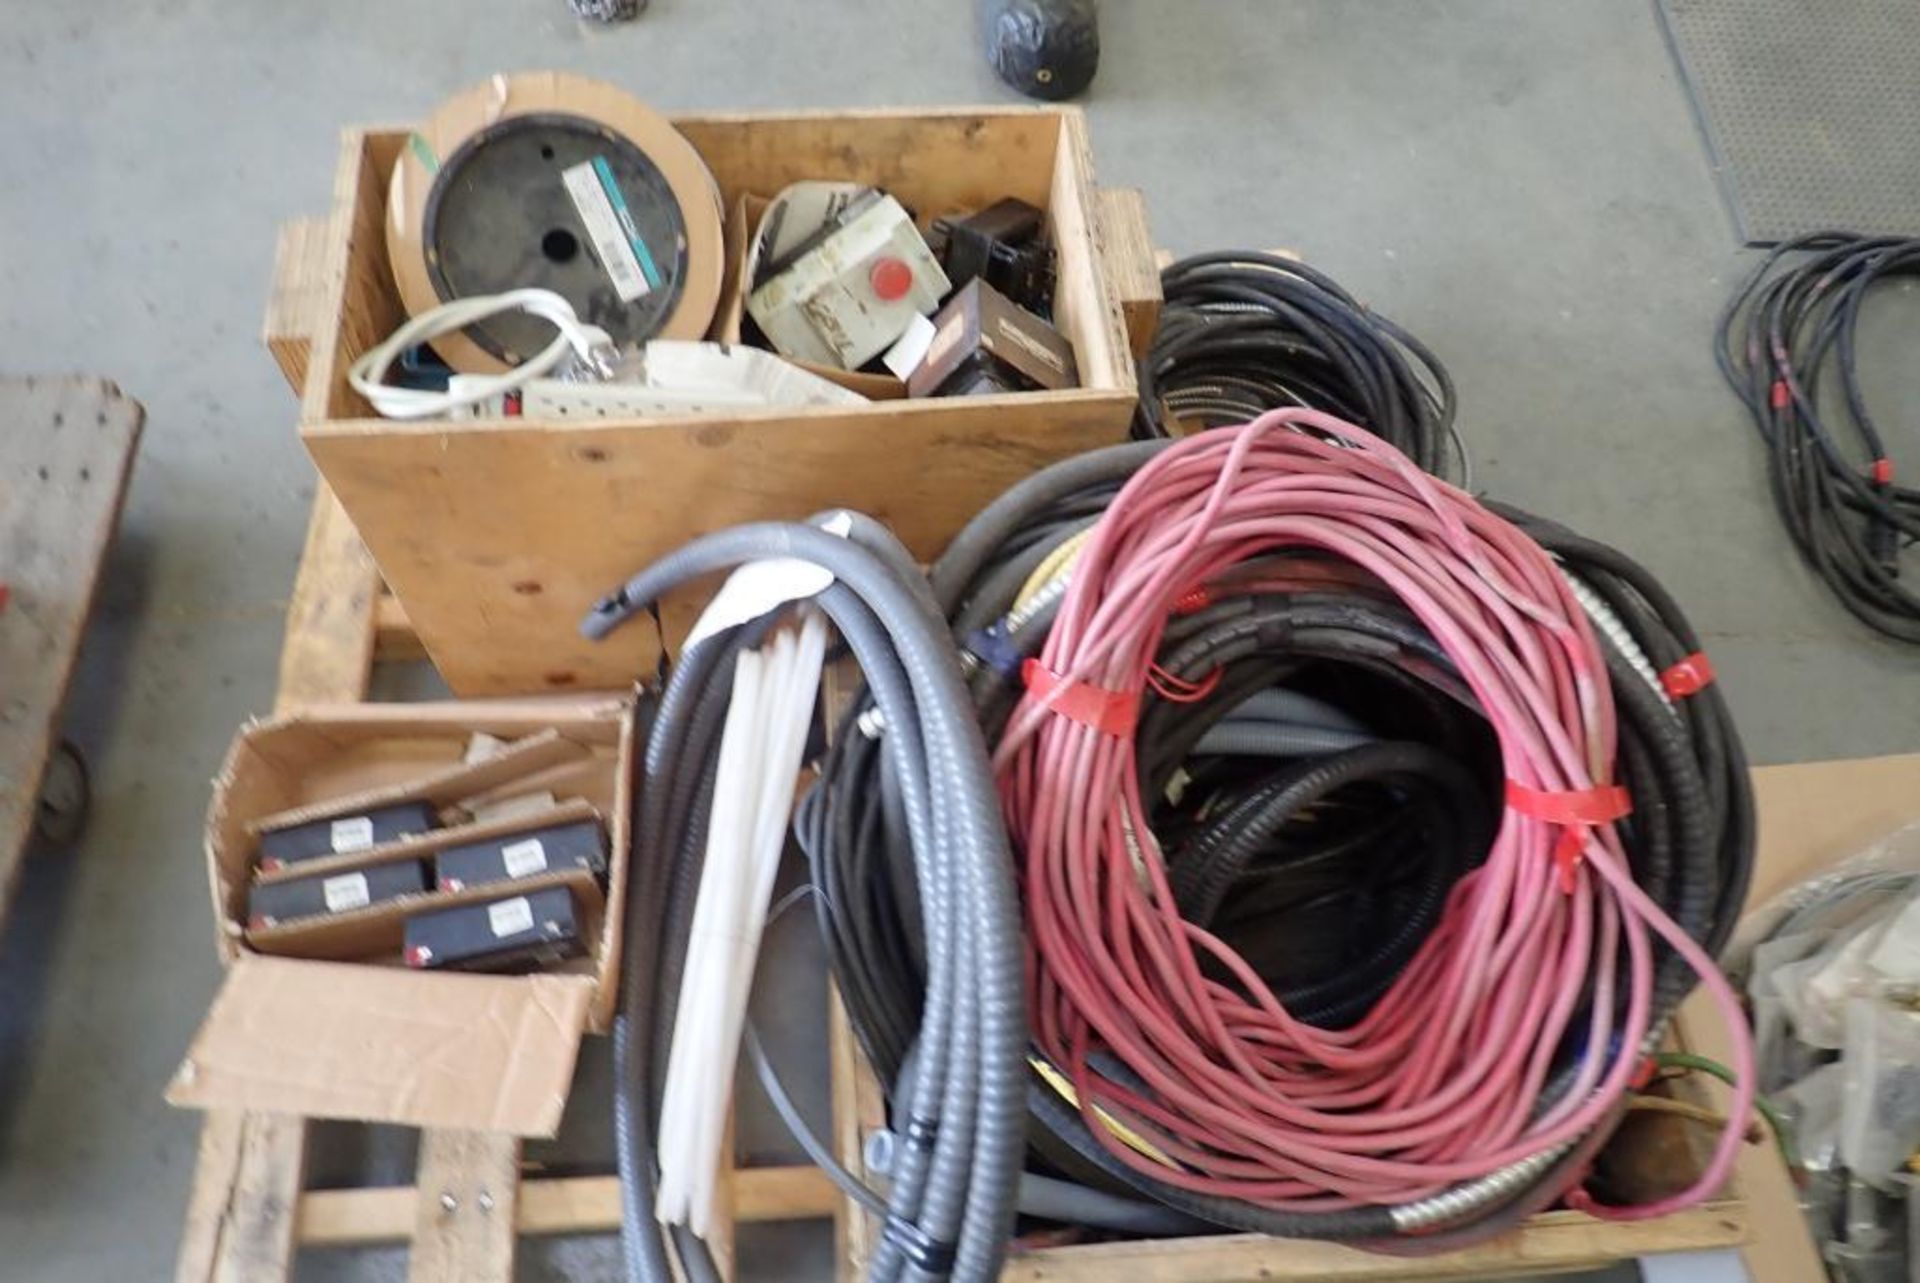 Lot of Asst. Cable, GS PE6V12 Portable Lead-Acid Batteries, Asst. Electrical, etc.